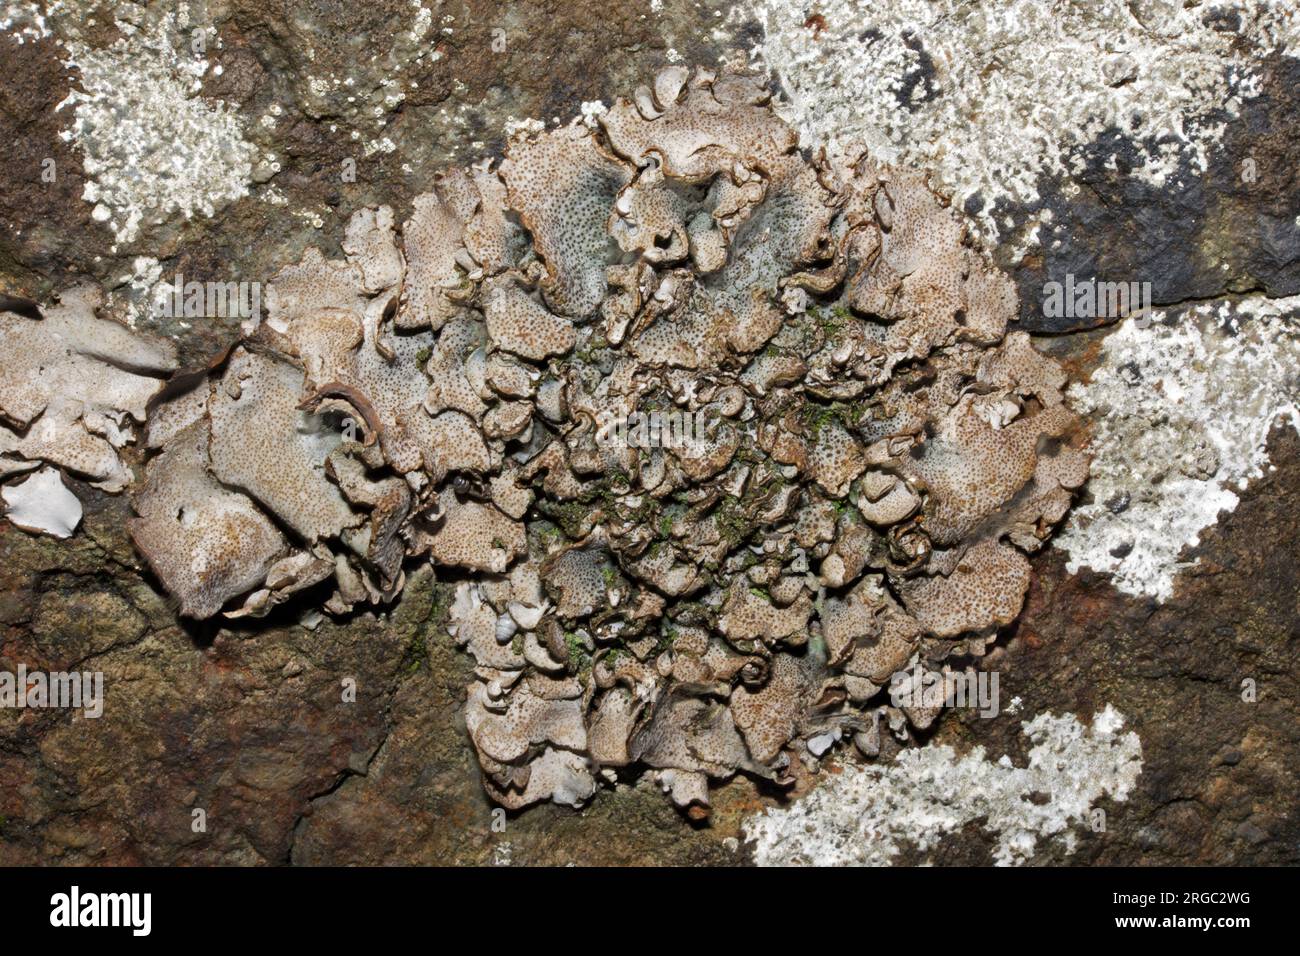 Il Dermatocarpon miniatum è un lichene fogliare che si trova su rocce calcaree umide. È cosmopolita ma registrata principalmente nell'emisfero settentrionale. Foto Stock